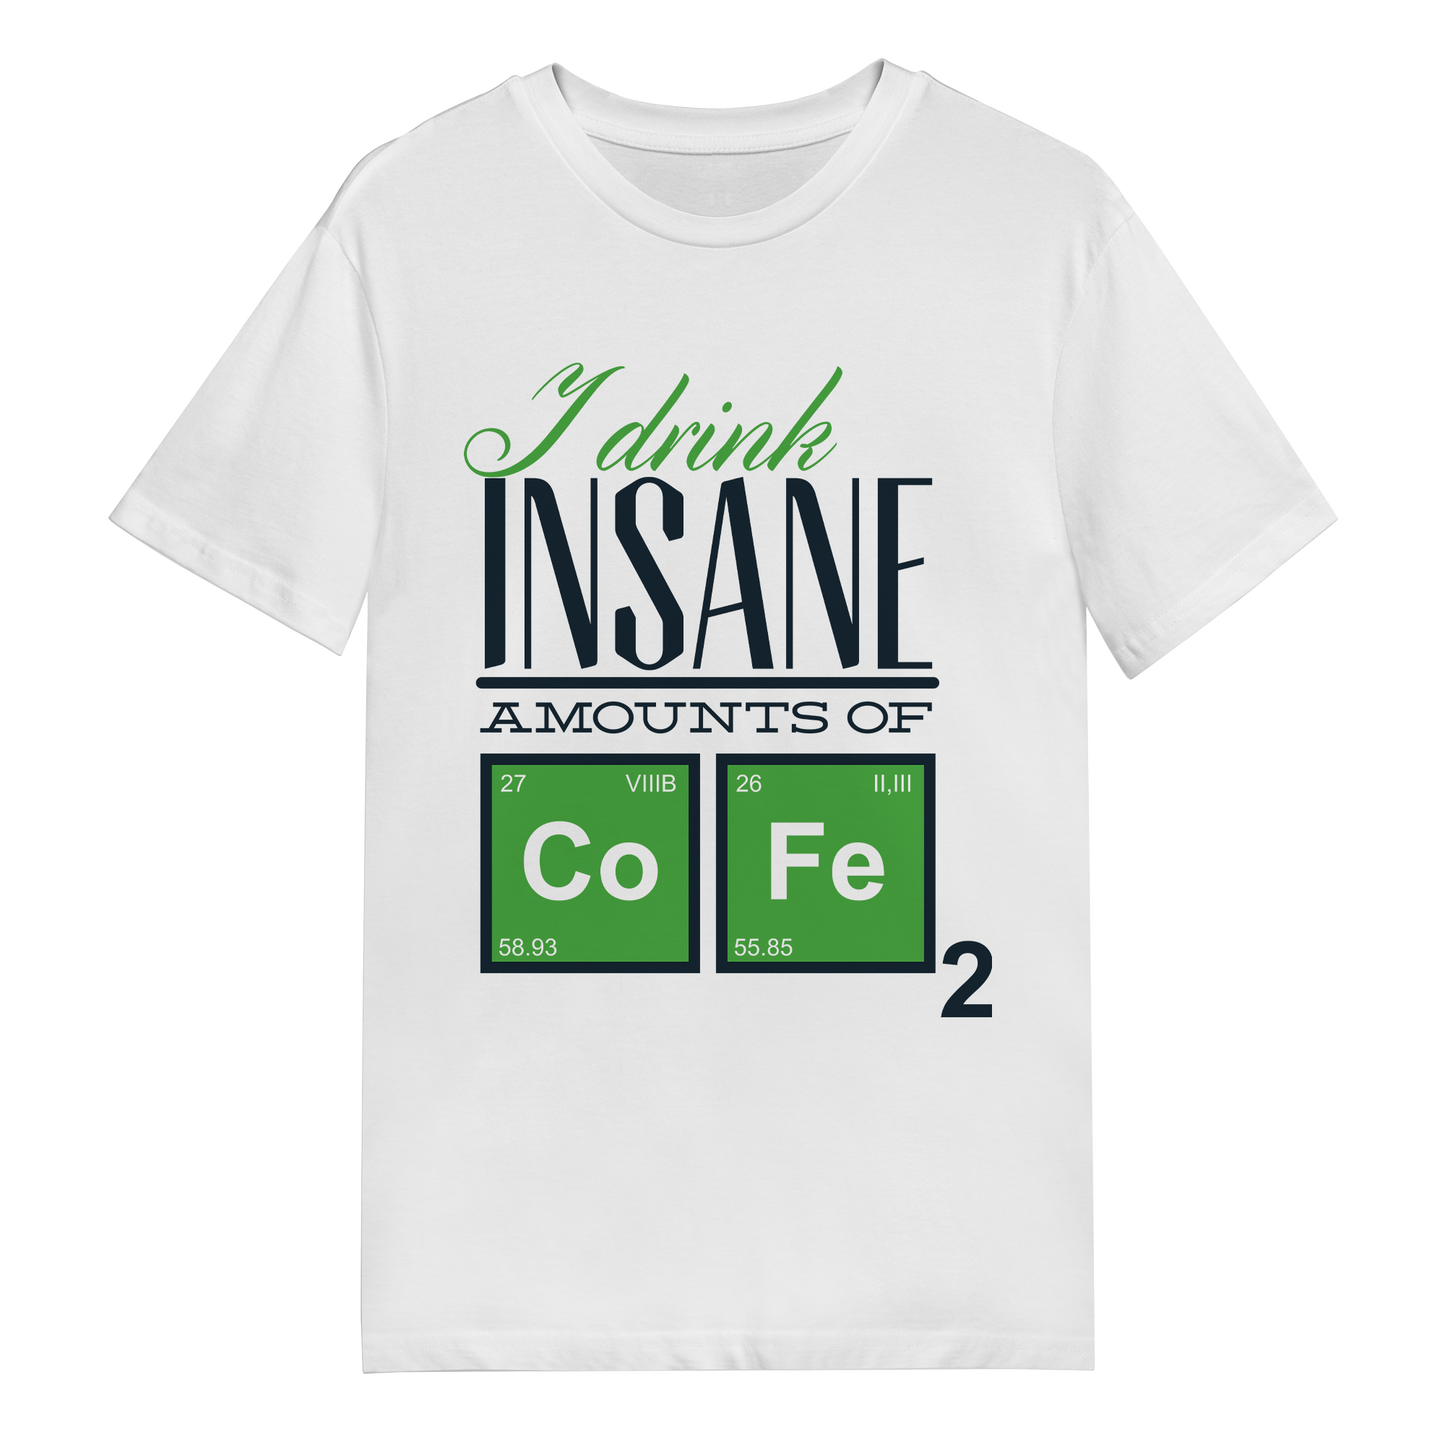 Men's T-Shirt - Chemistry CoFe2